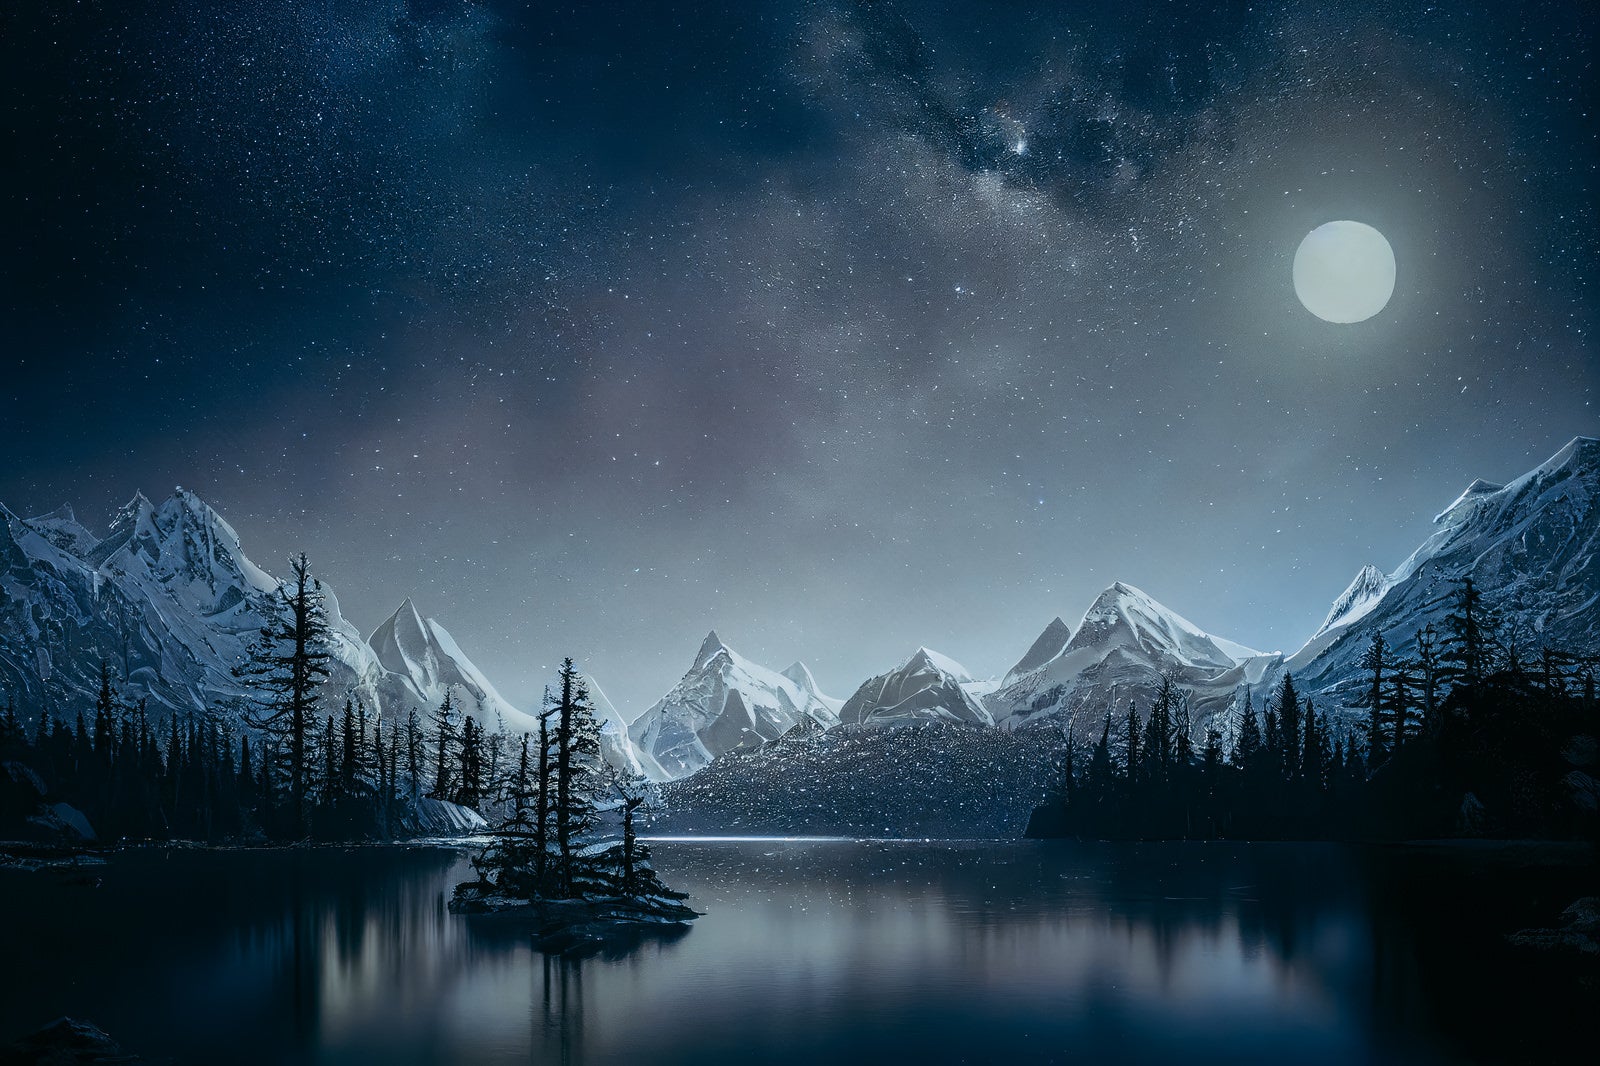 「湖畔の静寂を映し出す月明り」の写真